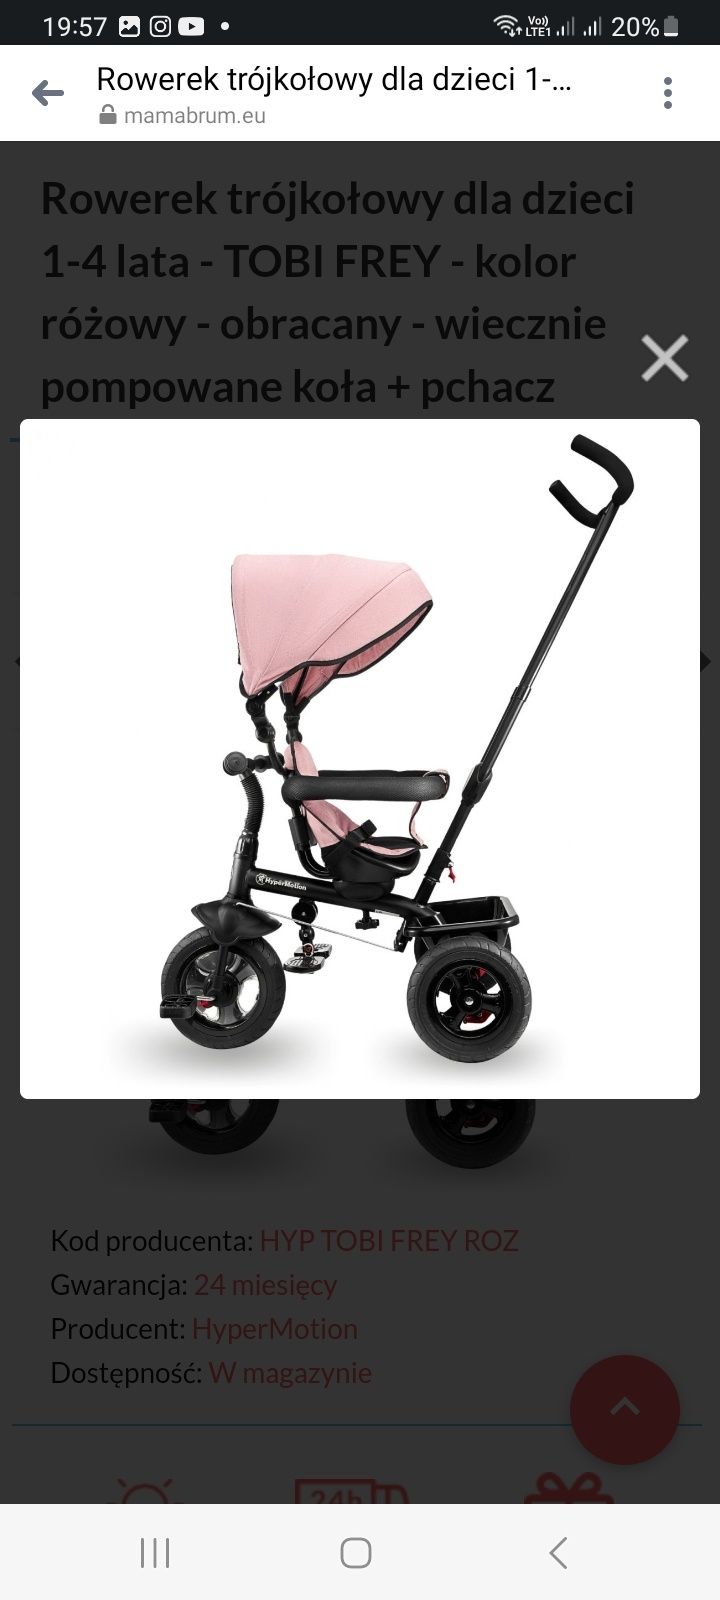 Rowerek trójkołowy dla dzieci 1-4 lata - TOBI FREY - kolor różowy - ob